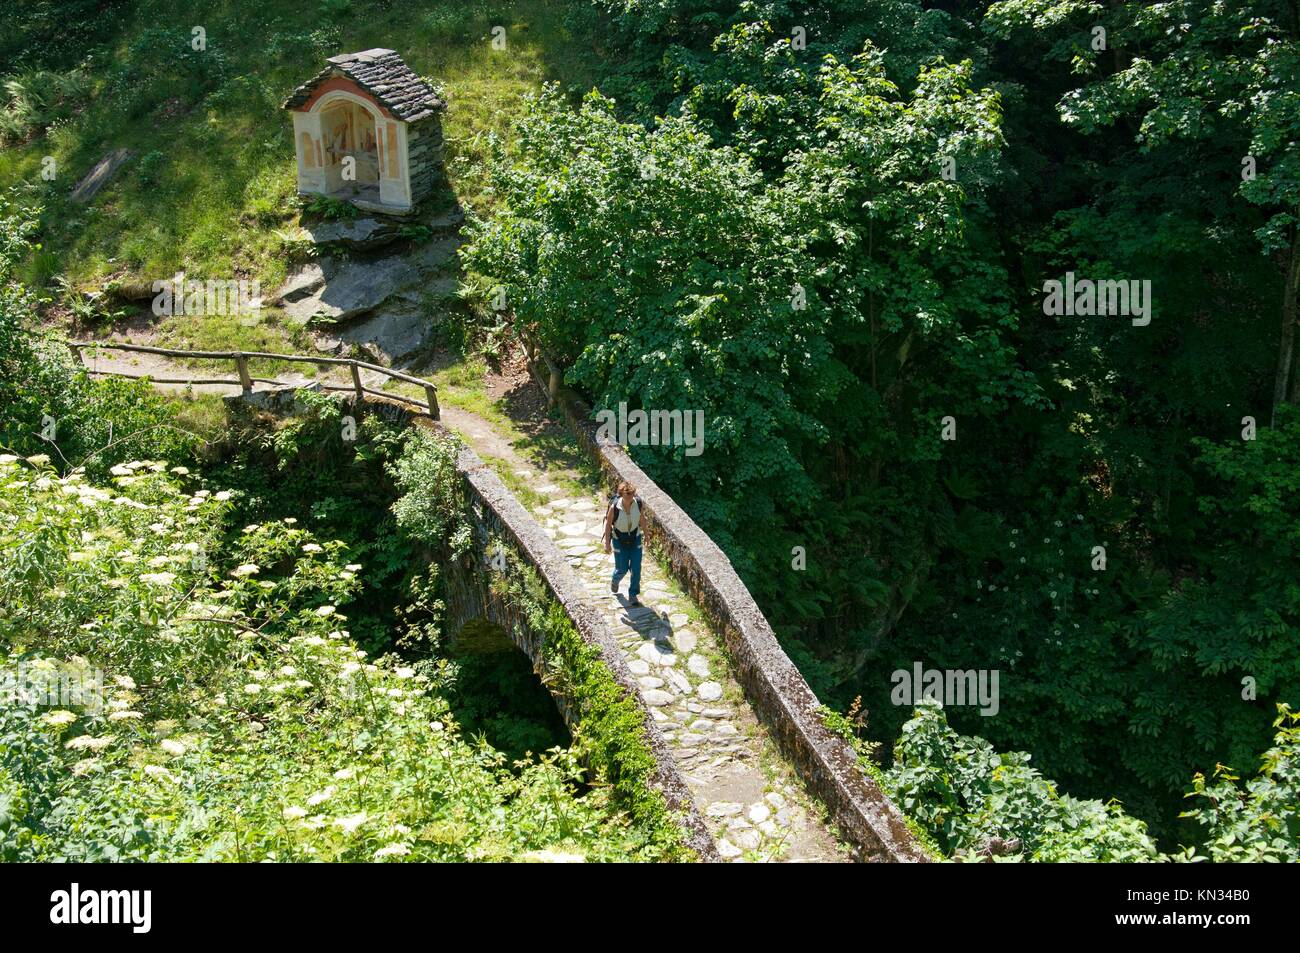 A historic bridle path on a bridge with cobblestone pavement in the Verzasca valley near Corippo, Ticino, Switzerland Stock Photo